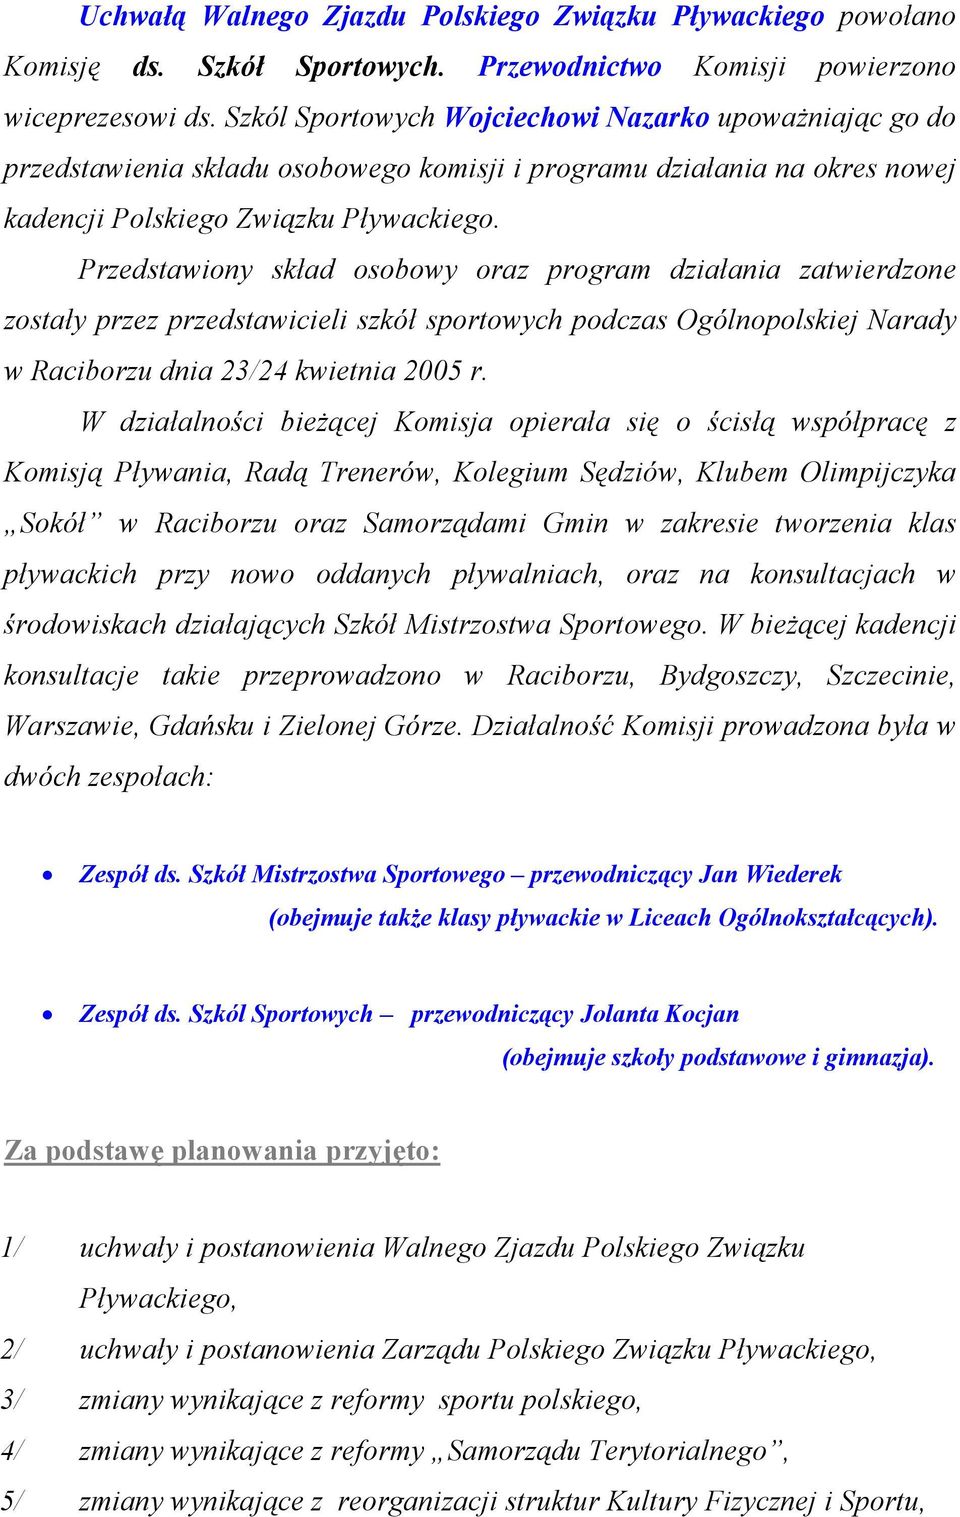 Przedstawiony skład osobowy oraz program działania zatwierdzone zostały przez przedstawicieli szkół sportowych podczas Ogólnopolskiej Narady w Raciborzu dnia 23/24 kwietnia 2005 r.